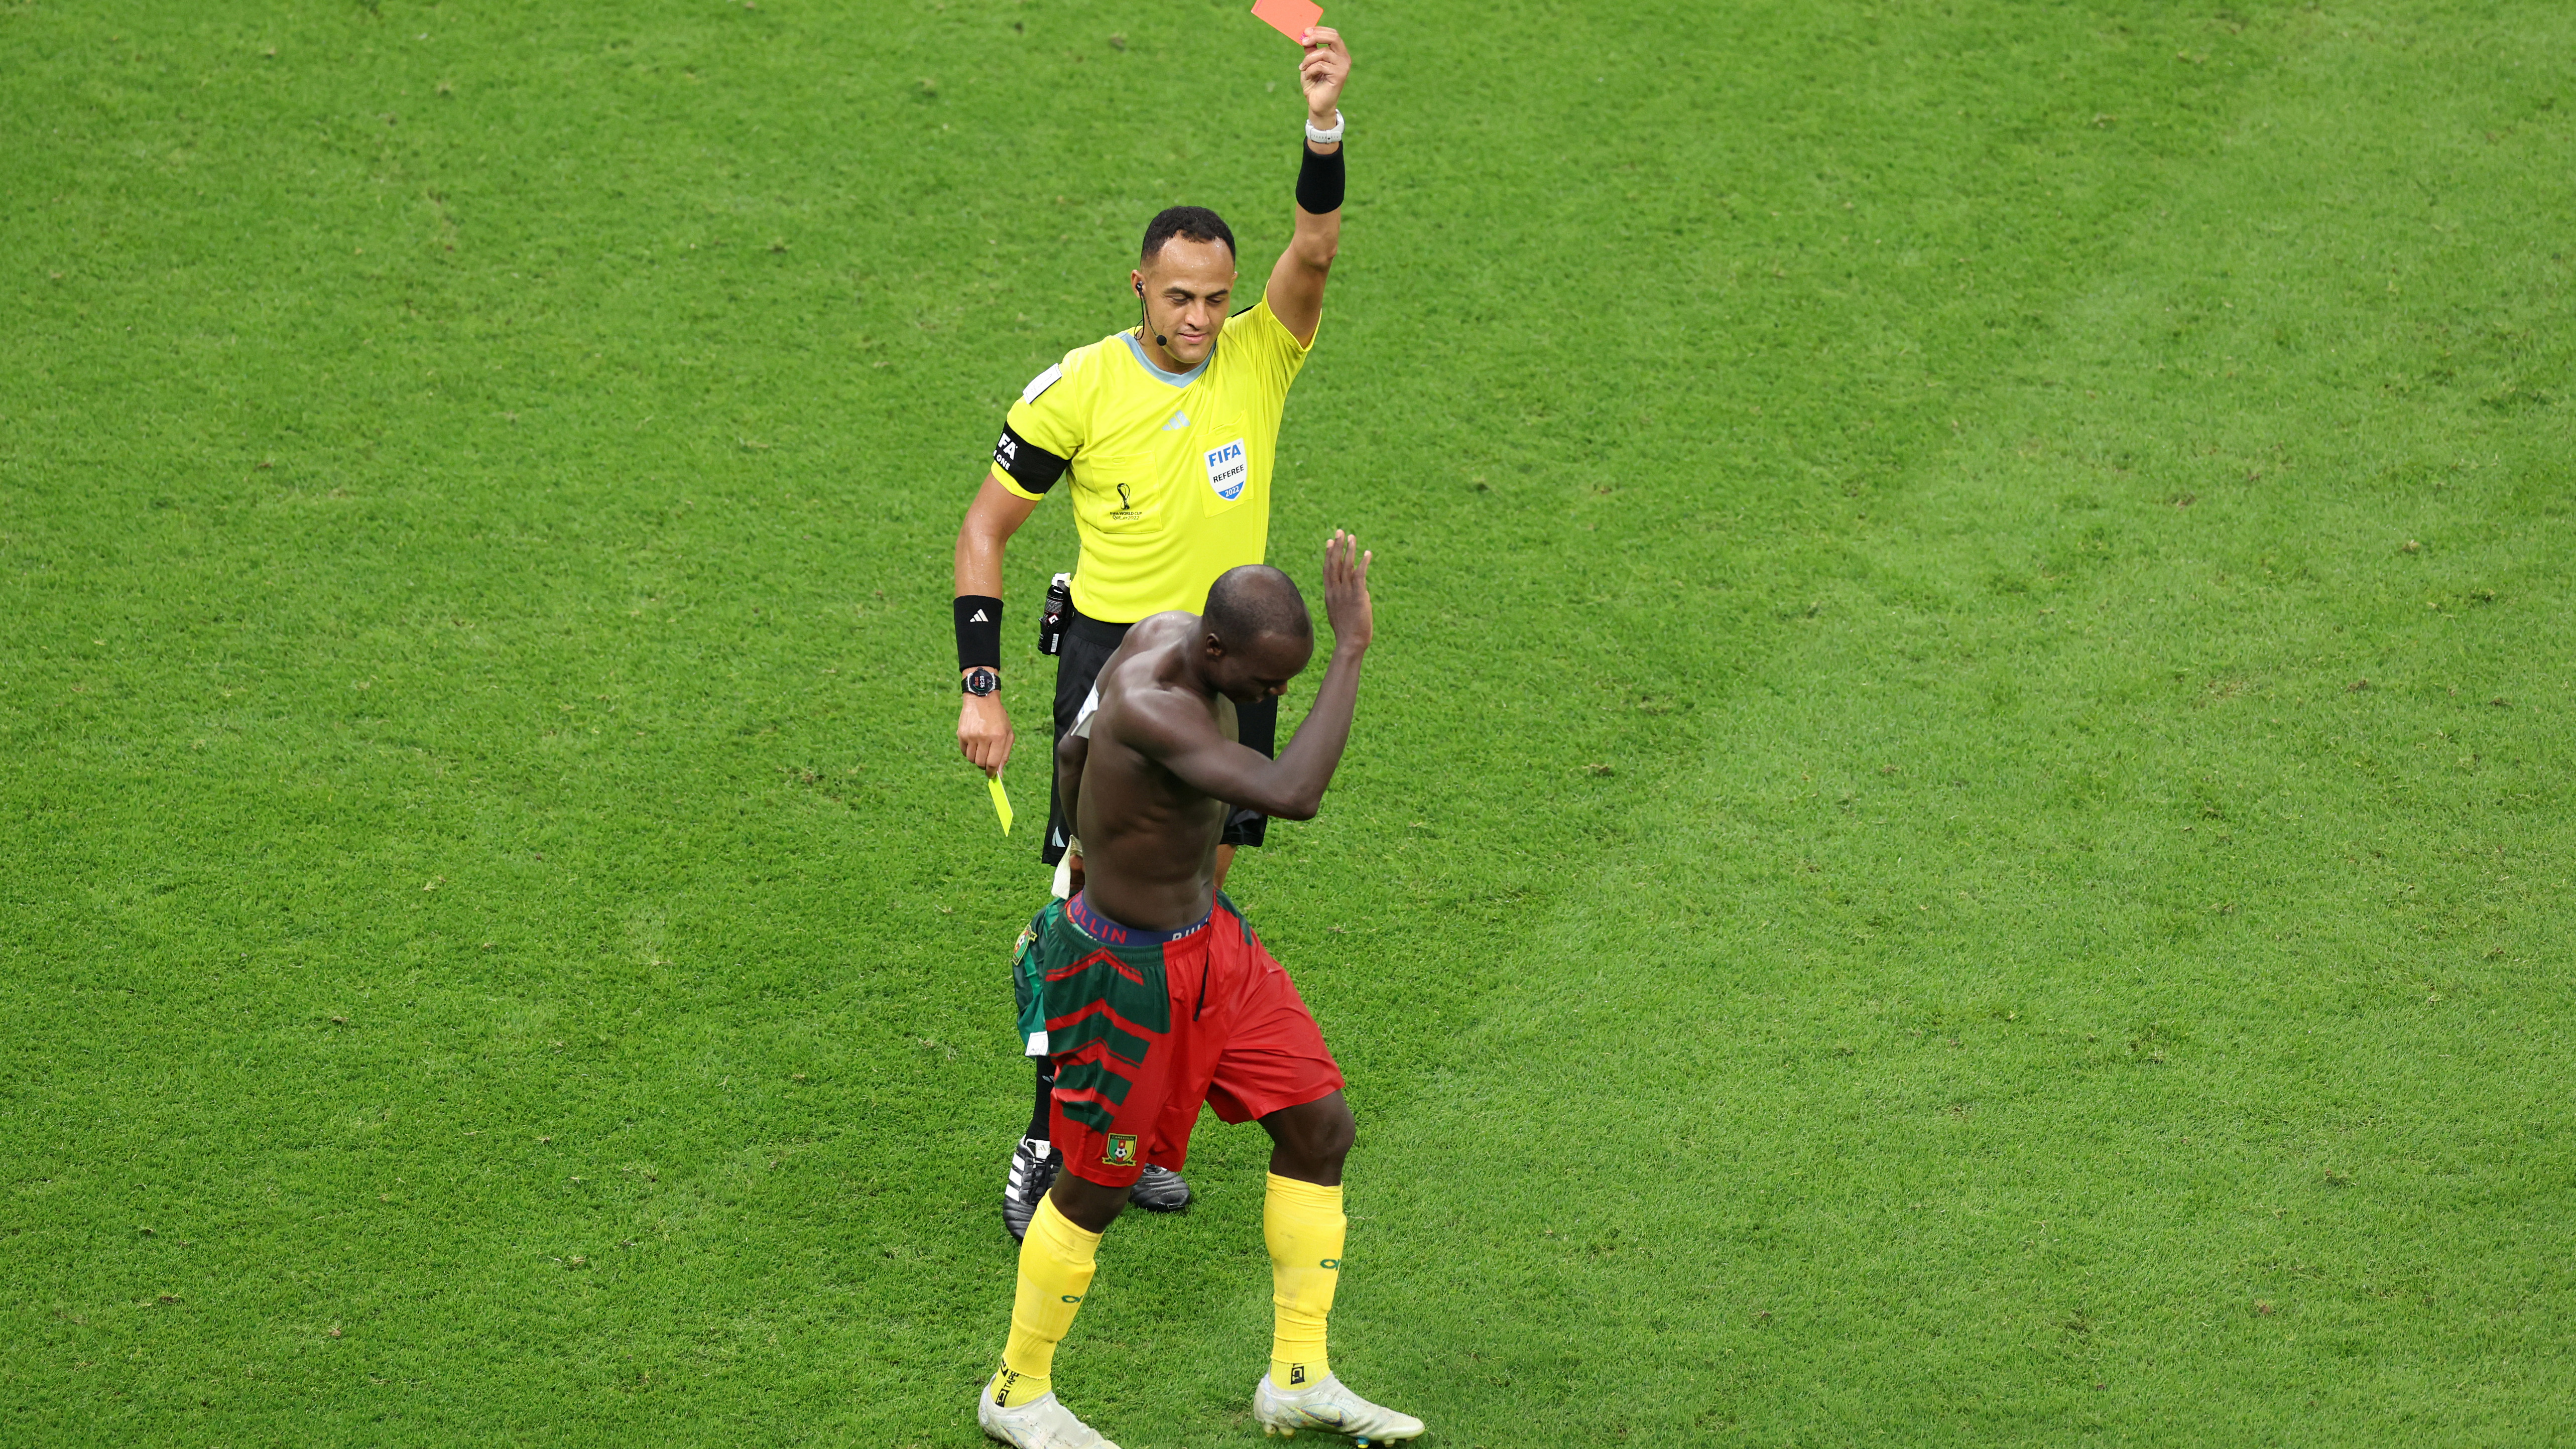 FIFA World Cup 2022 Cameroon v Brazil Vincent Aboubakar sent off after willing goal celebration video